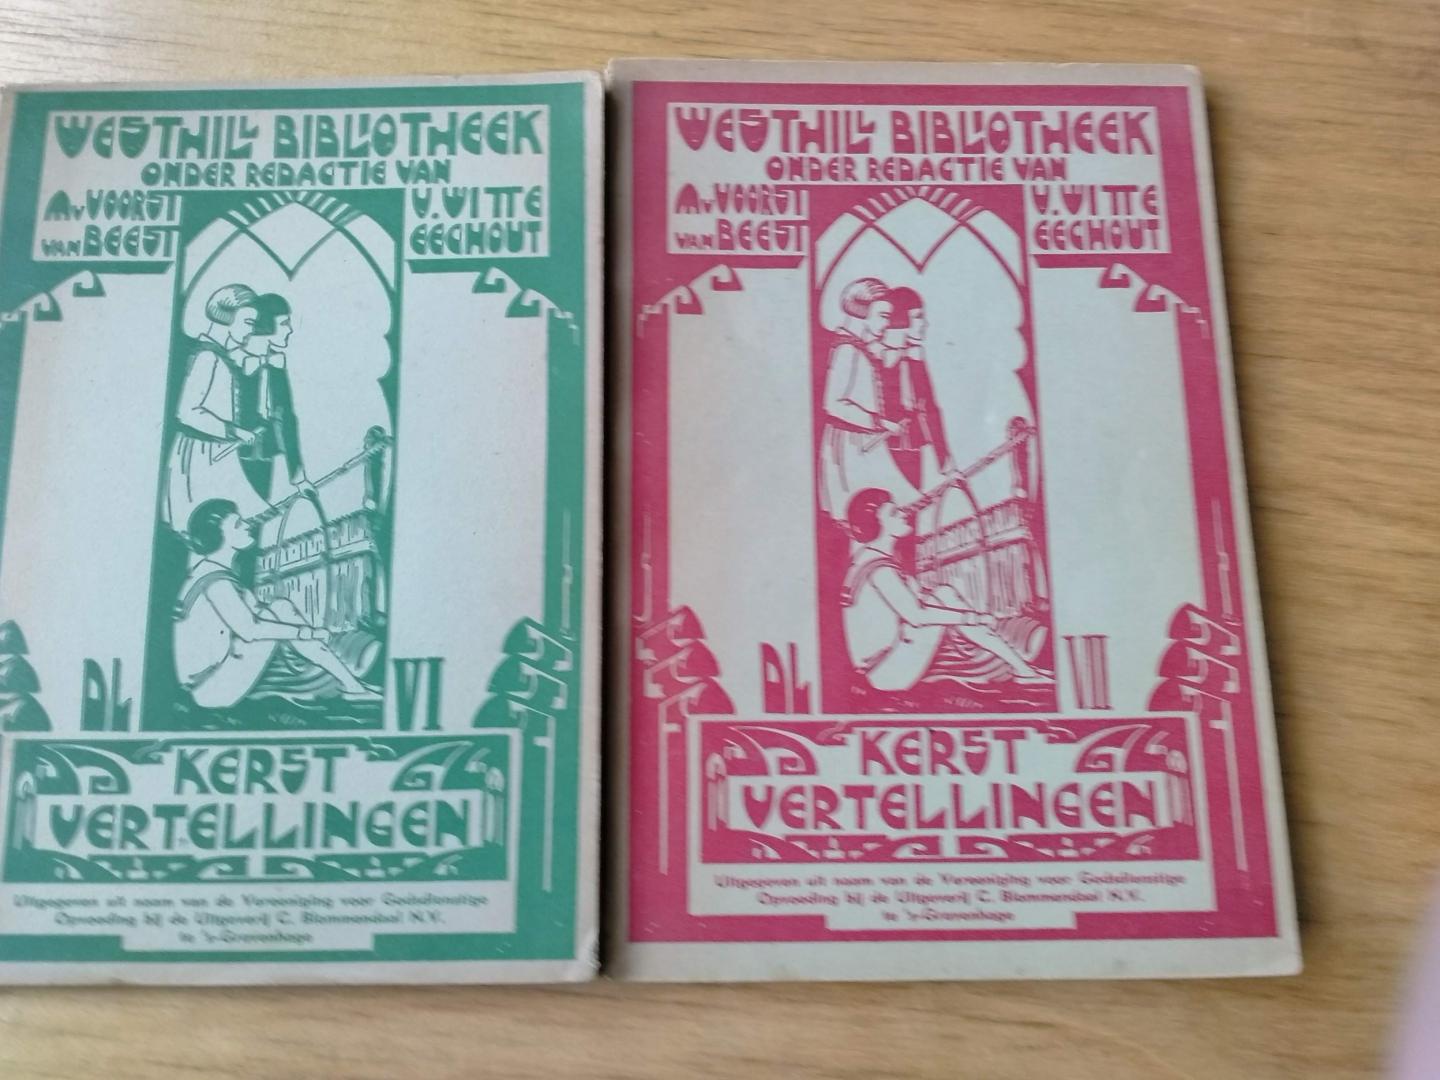 Voorst van Beest, M. van   en V. Witte Eechout - Kerstvertellingen , deel VI en deel VII  uit de Westhill-Bibliotheek